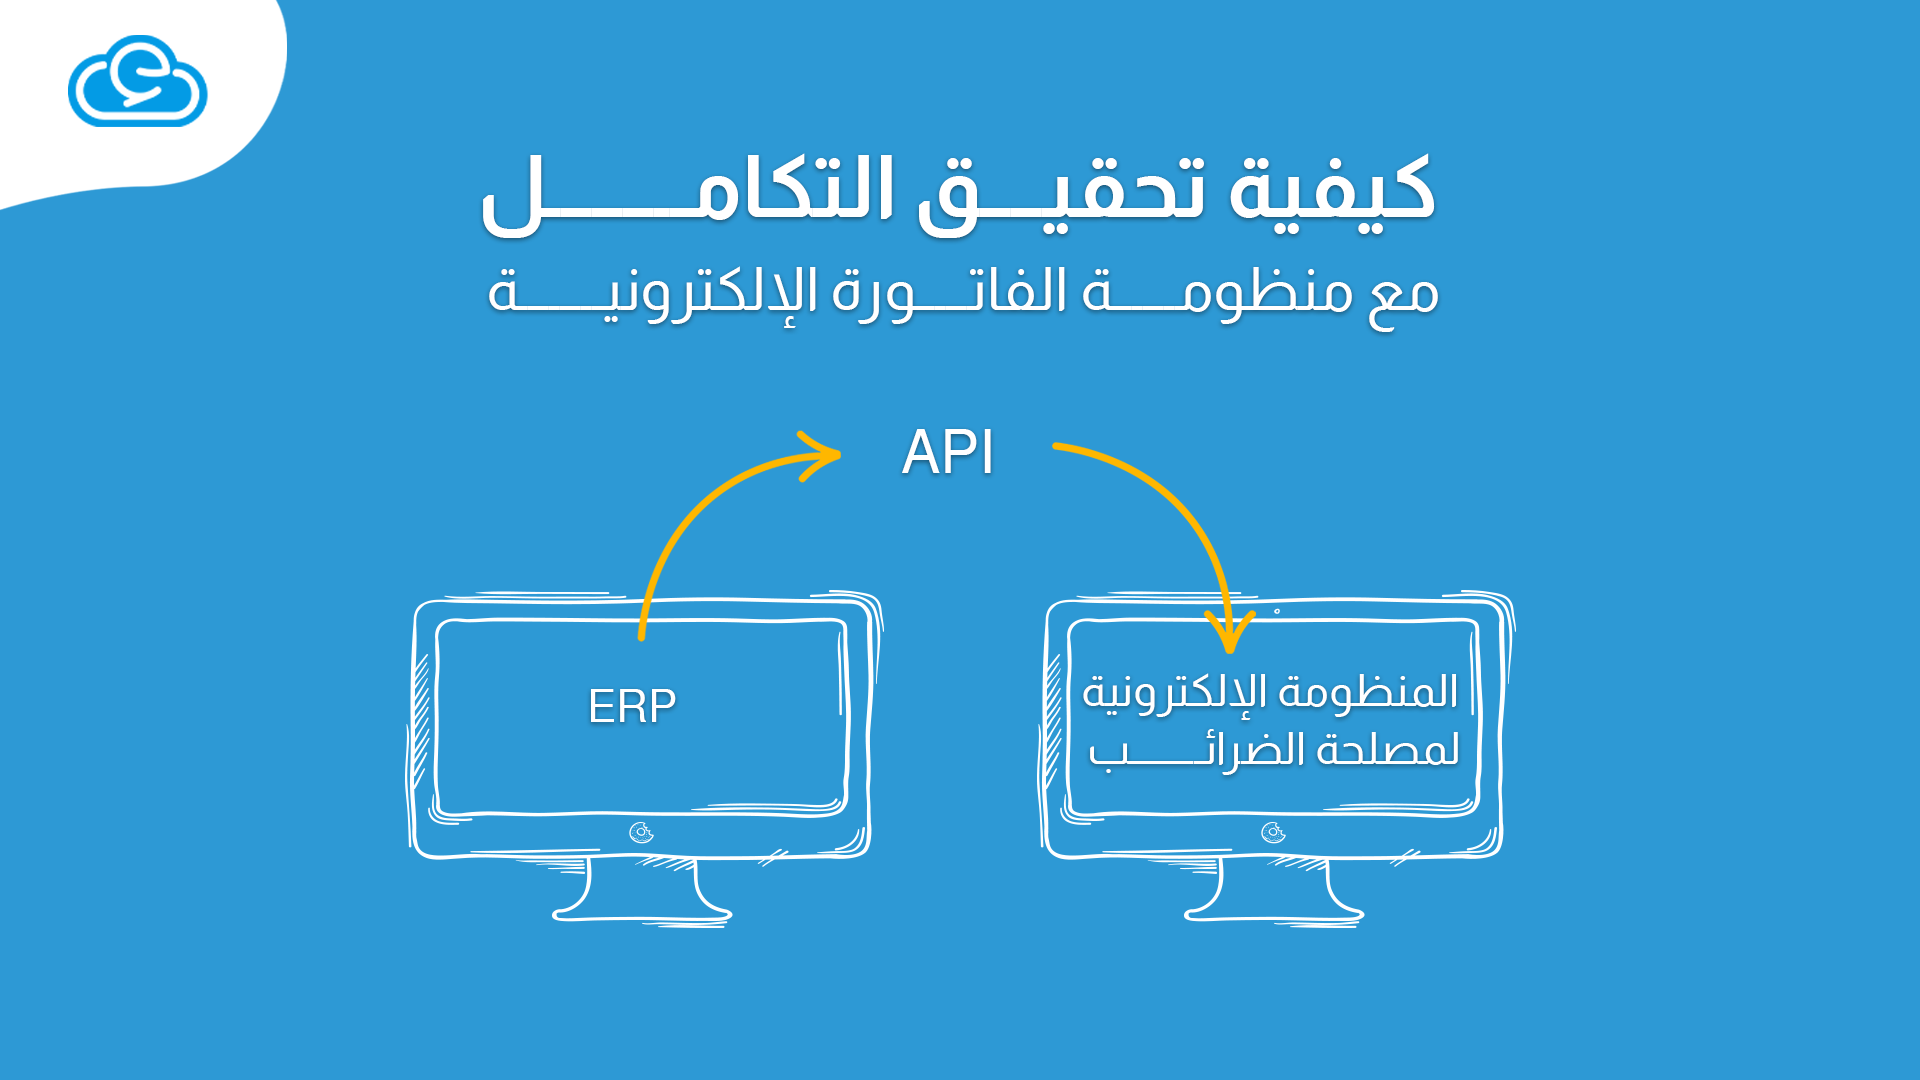 في مقال "ما هي الفواتير الإلكترونية؟" تعرف على كيفية تحقيق التكامل مع منظومة الفاتورة الإلكترونية عن طريق برامج API وبرنامج ERP المقدم من إدارة